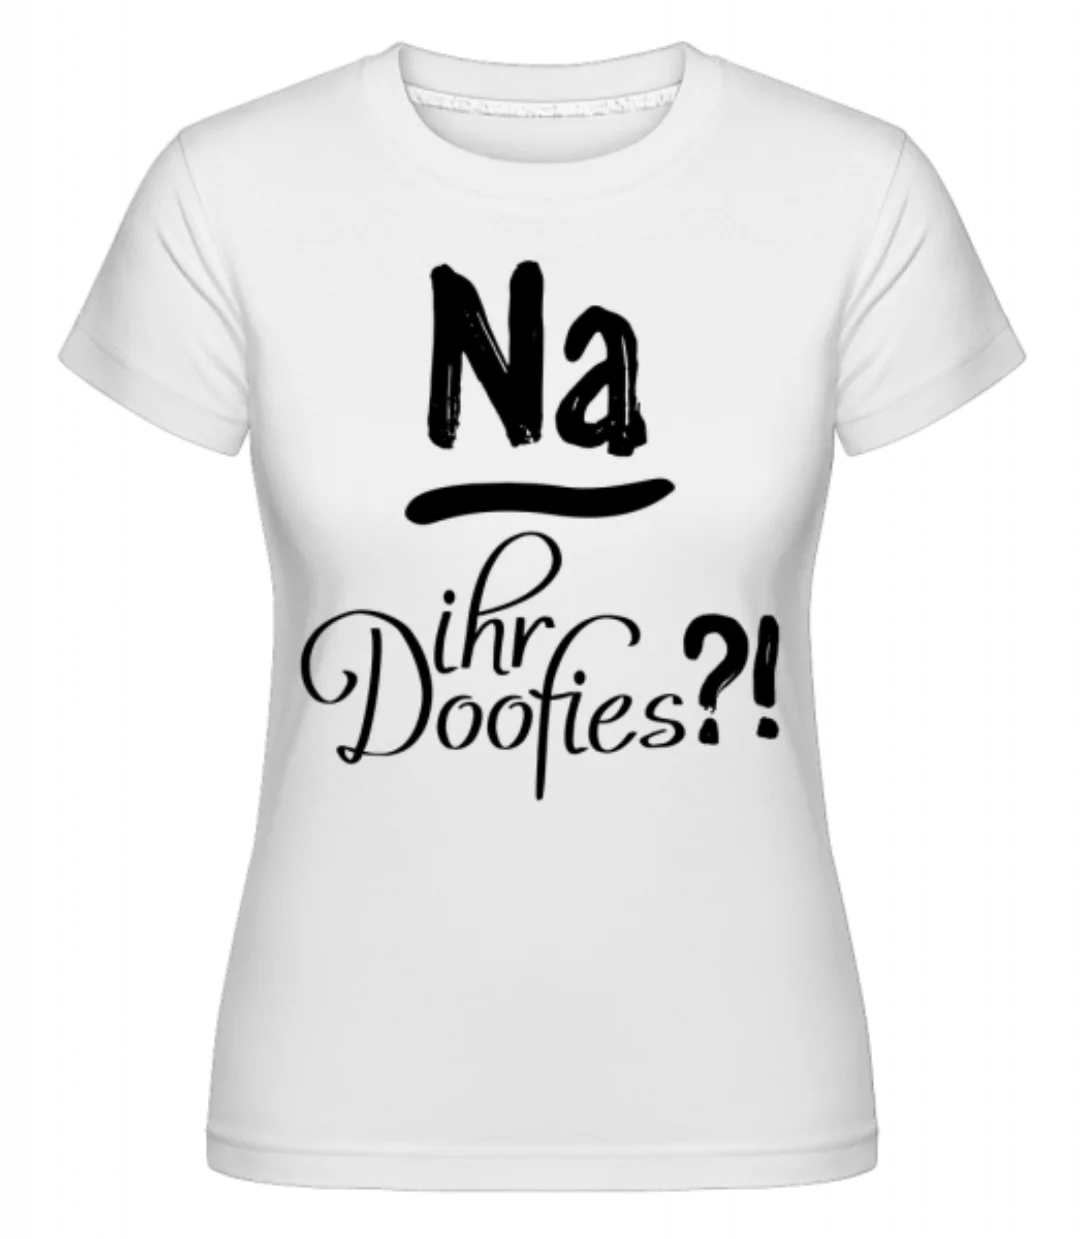 Na Ihr Doofies?! · Shirtinator Frauen T-Shirt günstig online kaufen